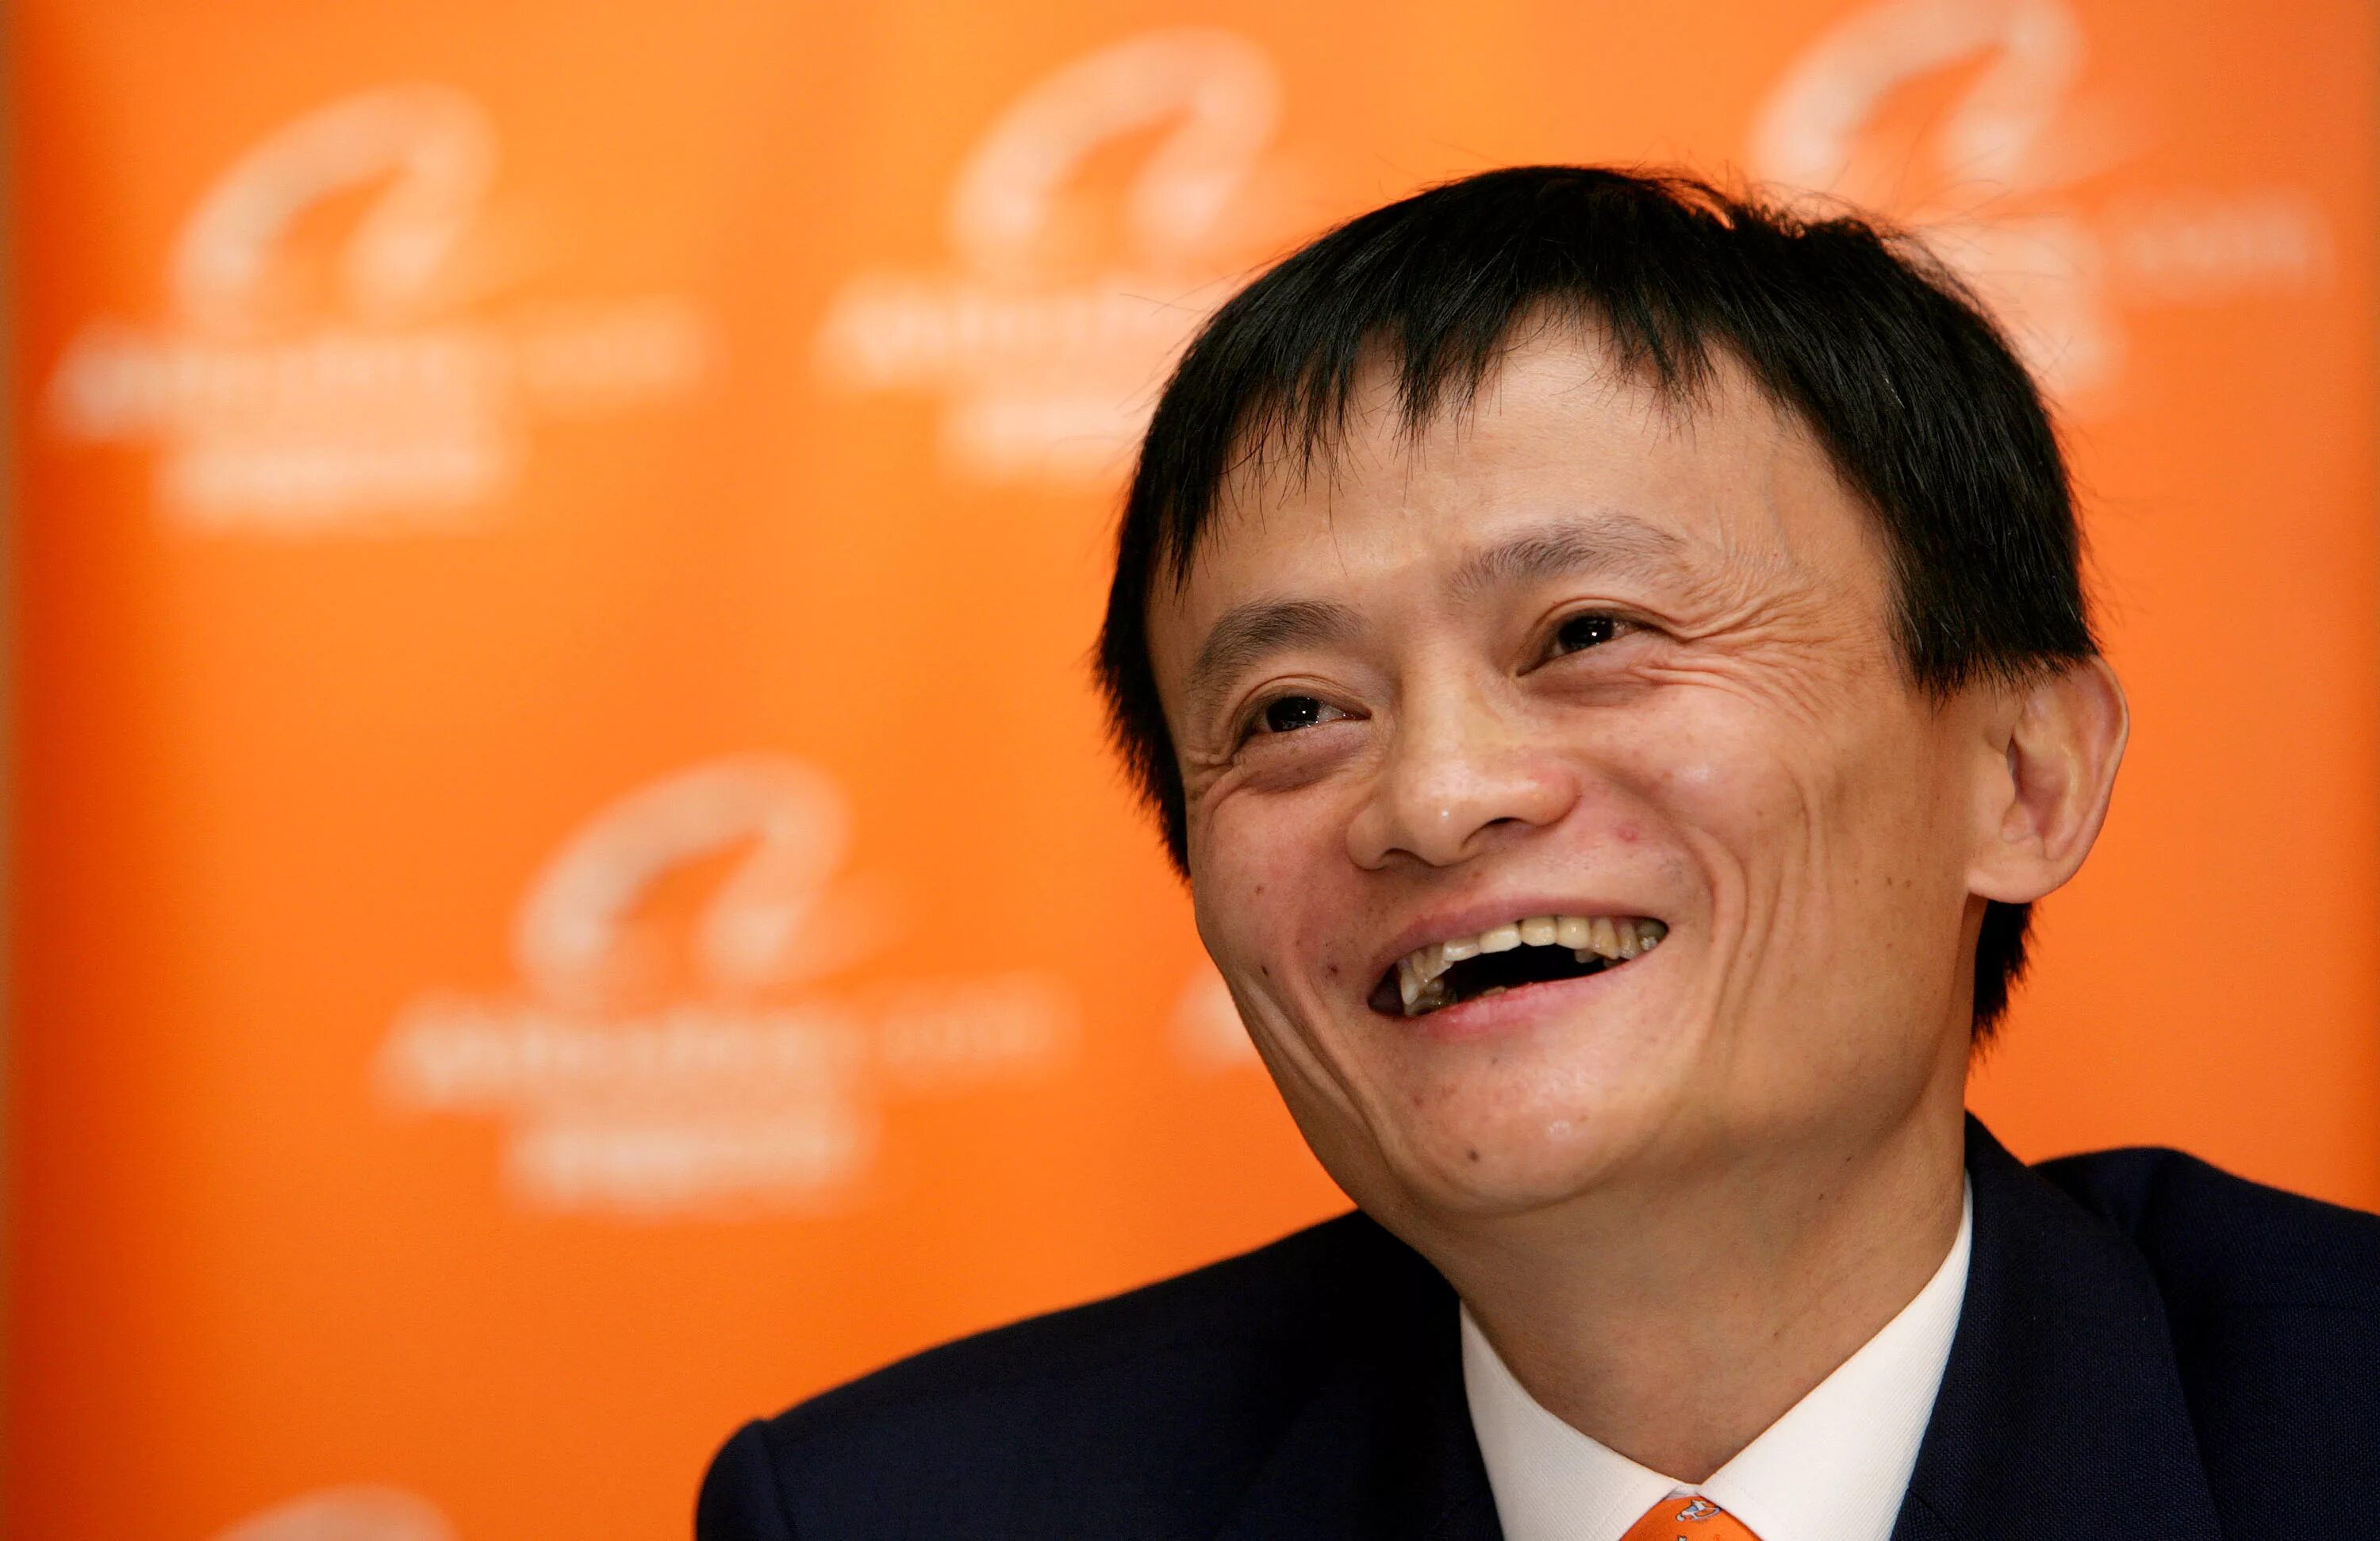 Джек ма. Китайский миллиардер Джек ма. Основатель Alibaba Group Джек ма.